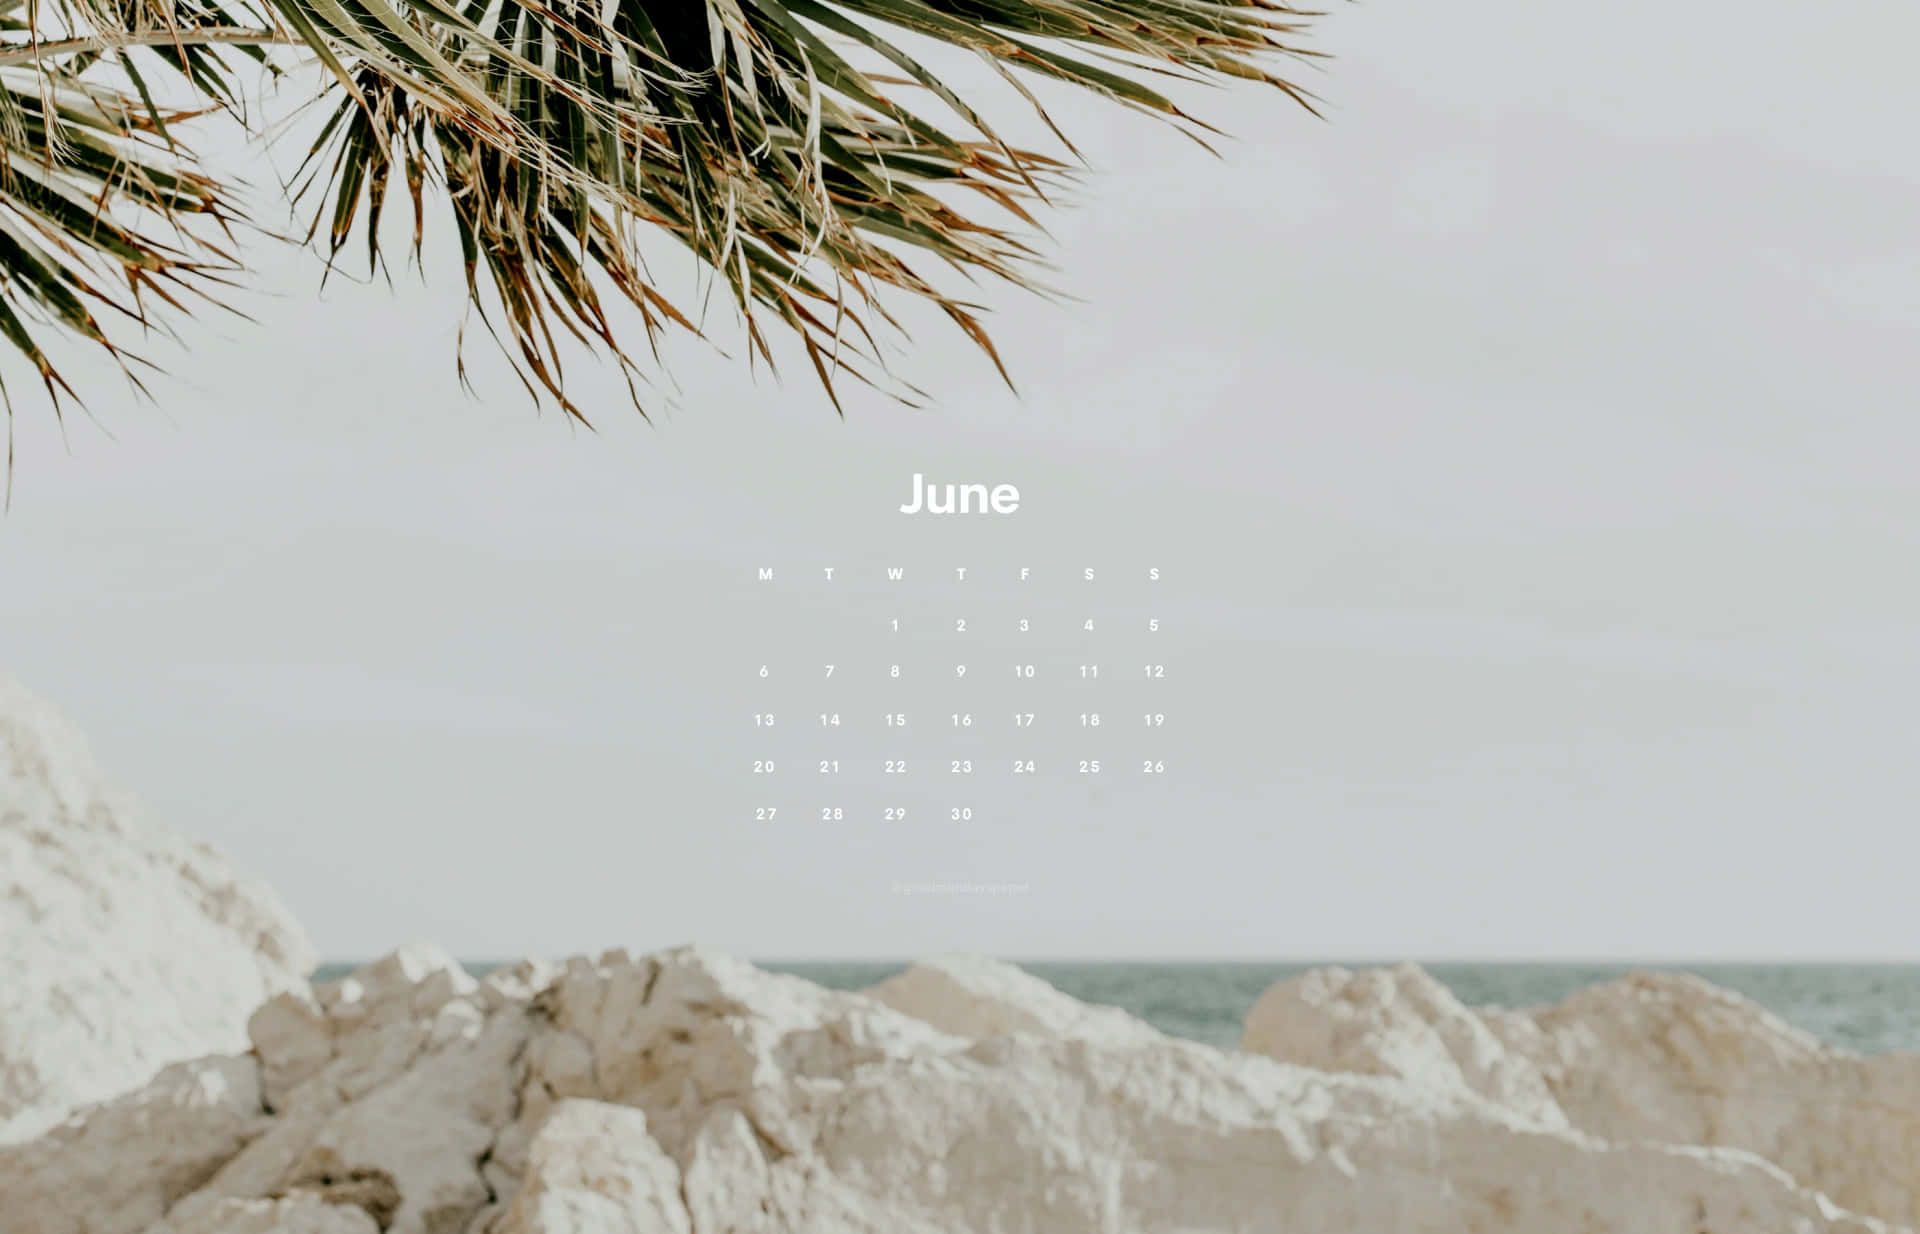 June Beach Calendar Wallpaper Wallpaper